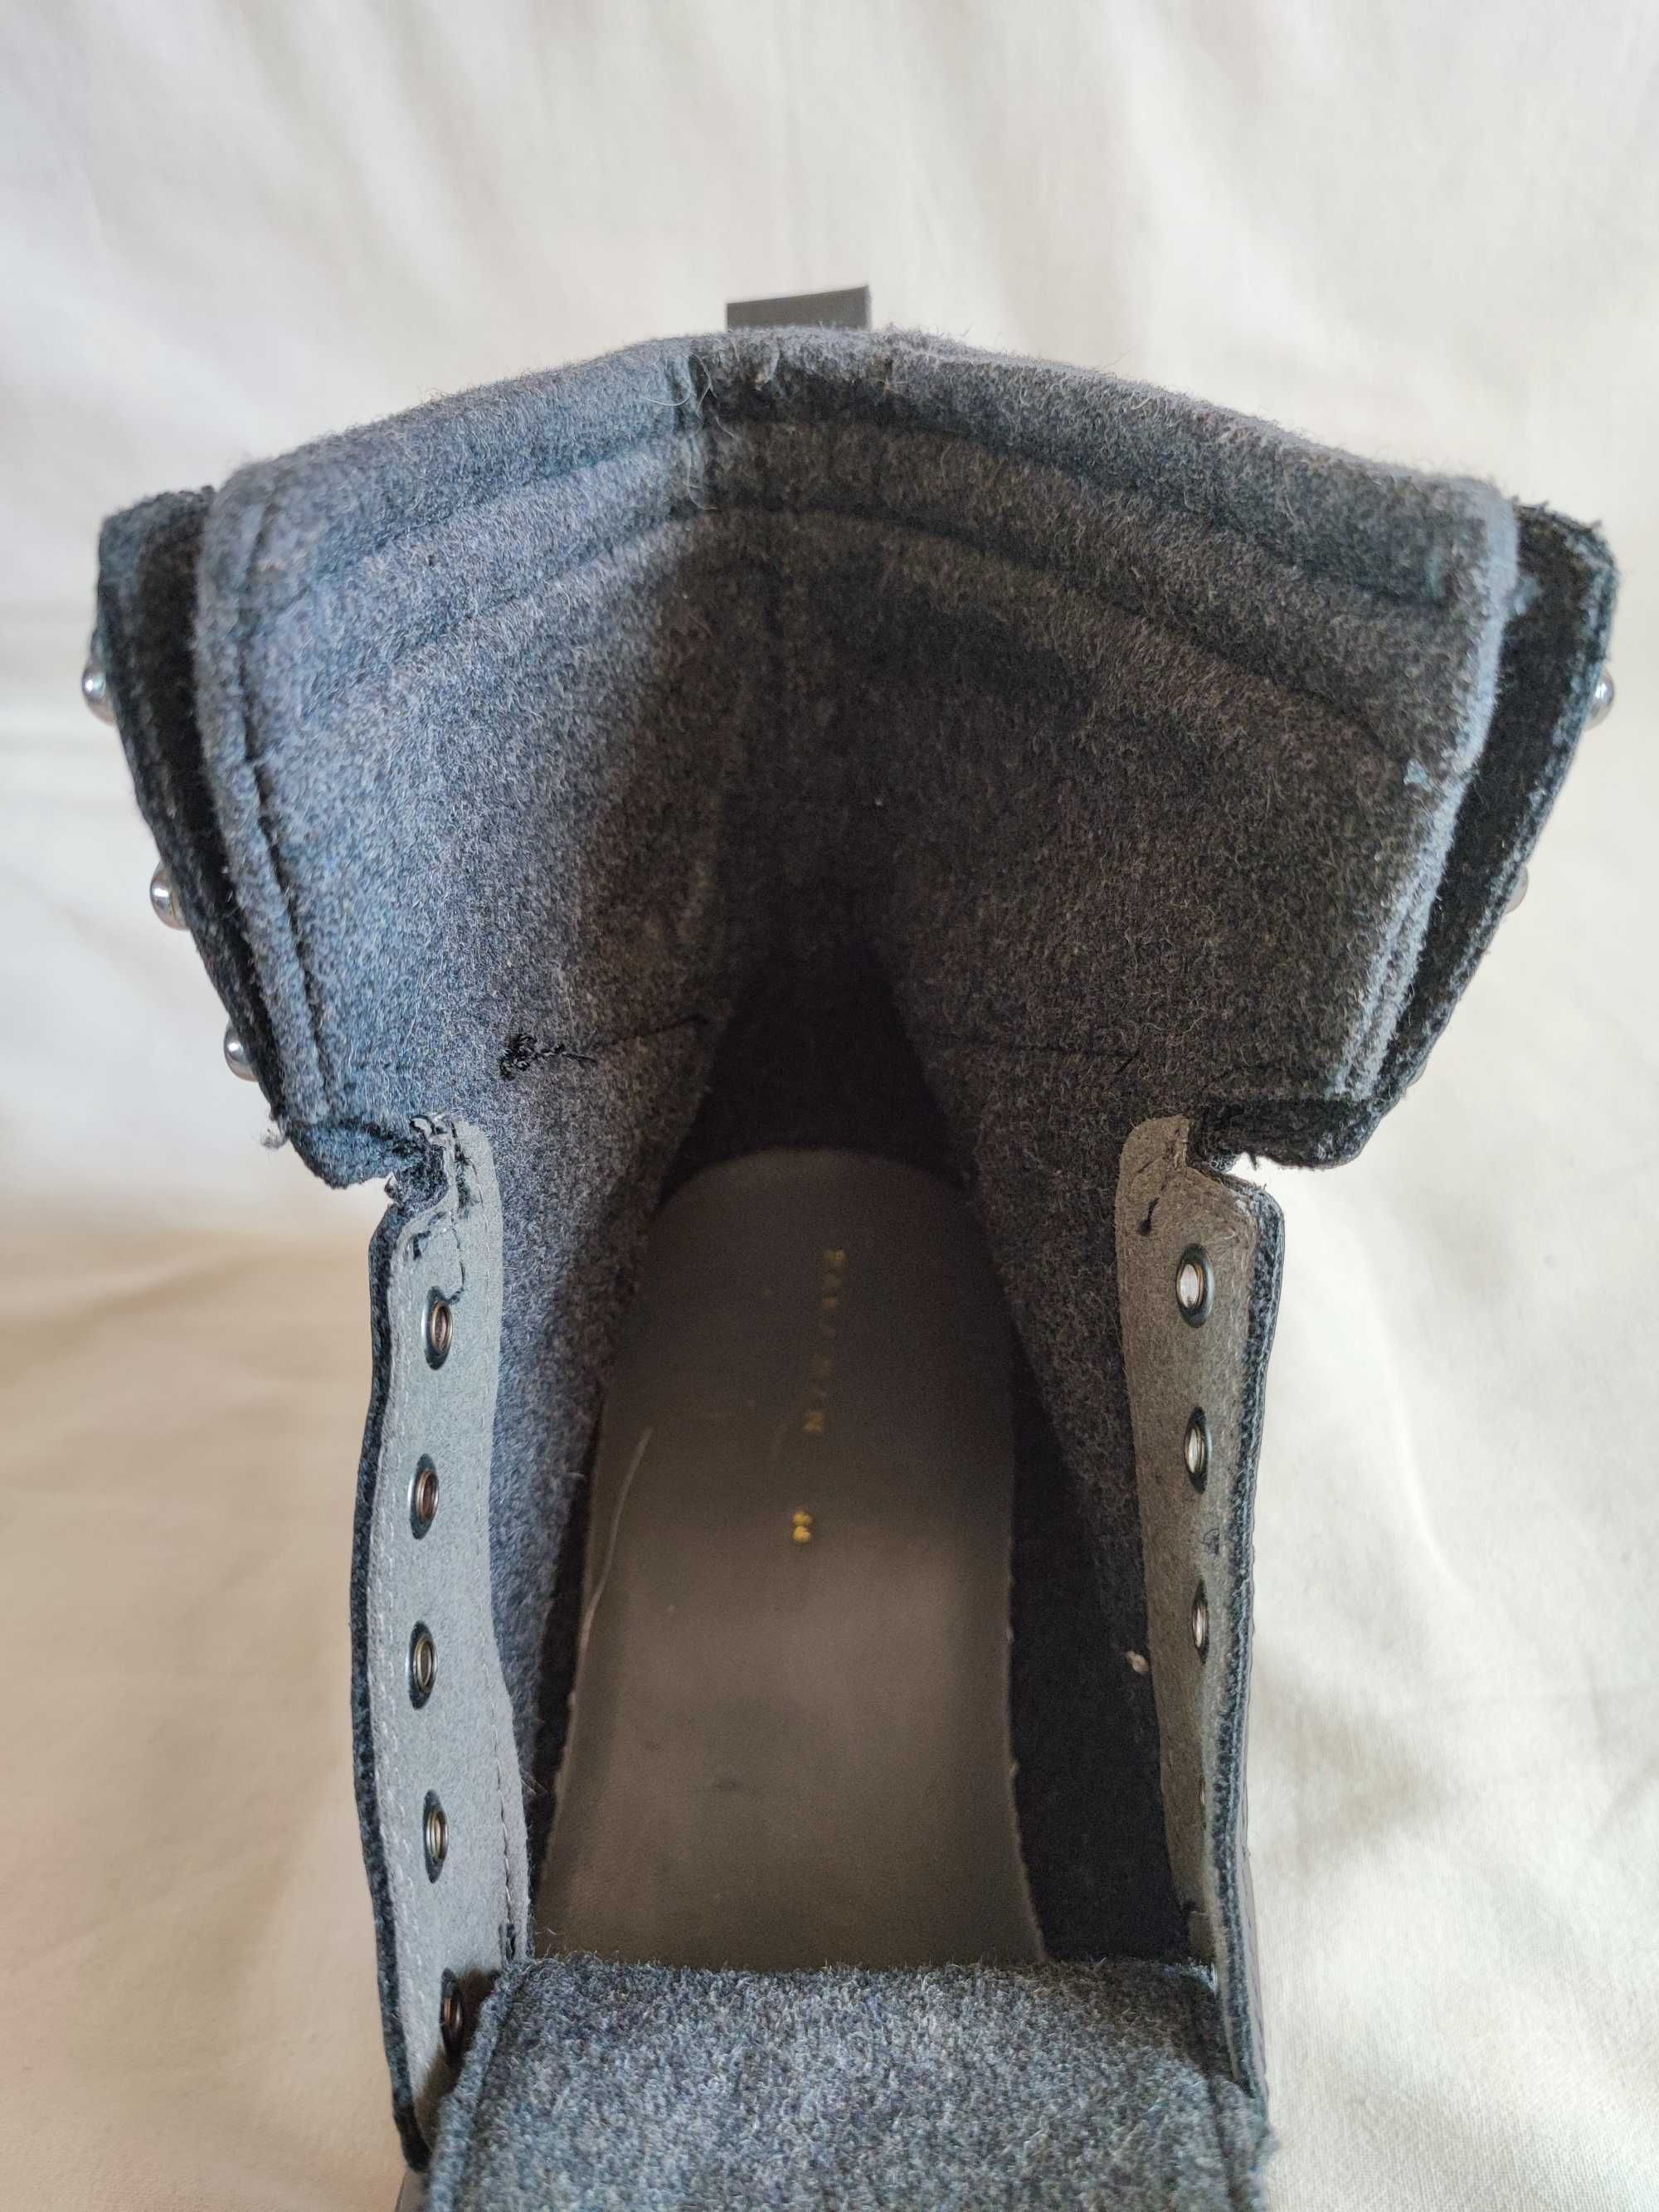 Ботинки кожаные мужские "Zara Man" Размер EUR-44,5 (29,5 см).Идеальные